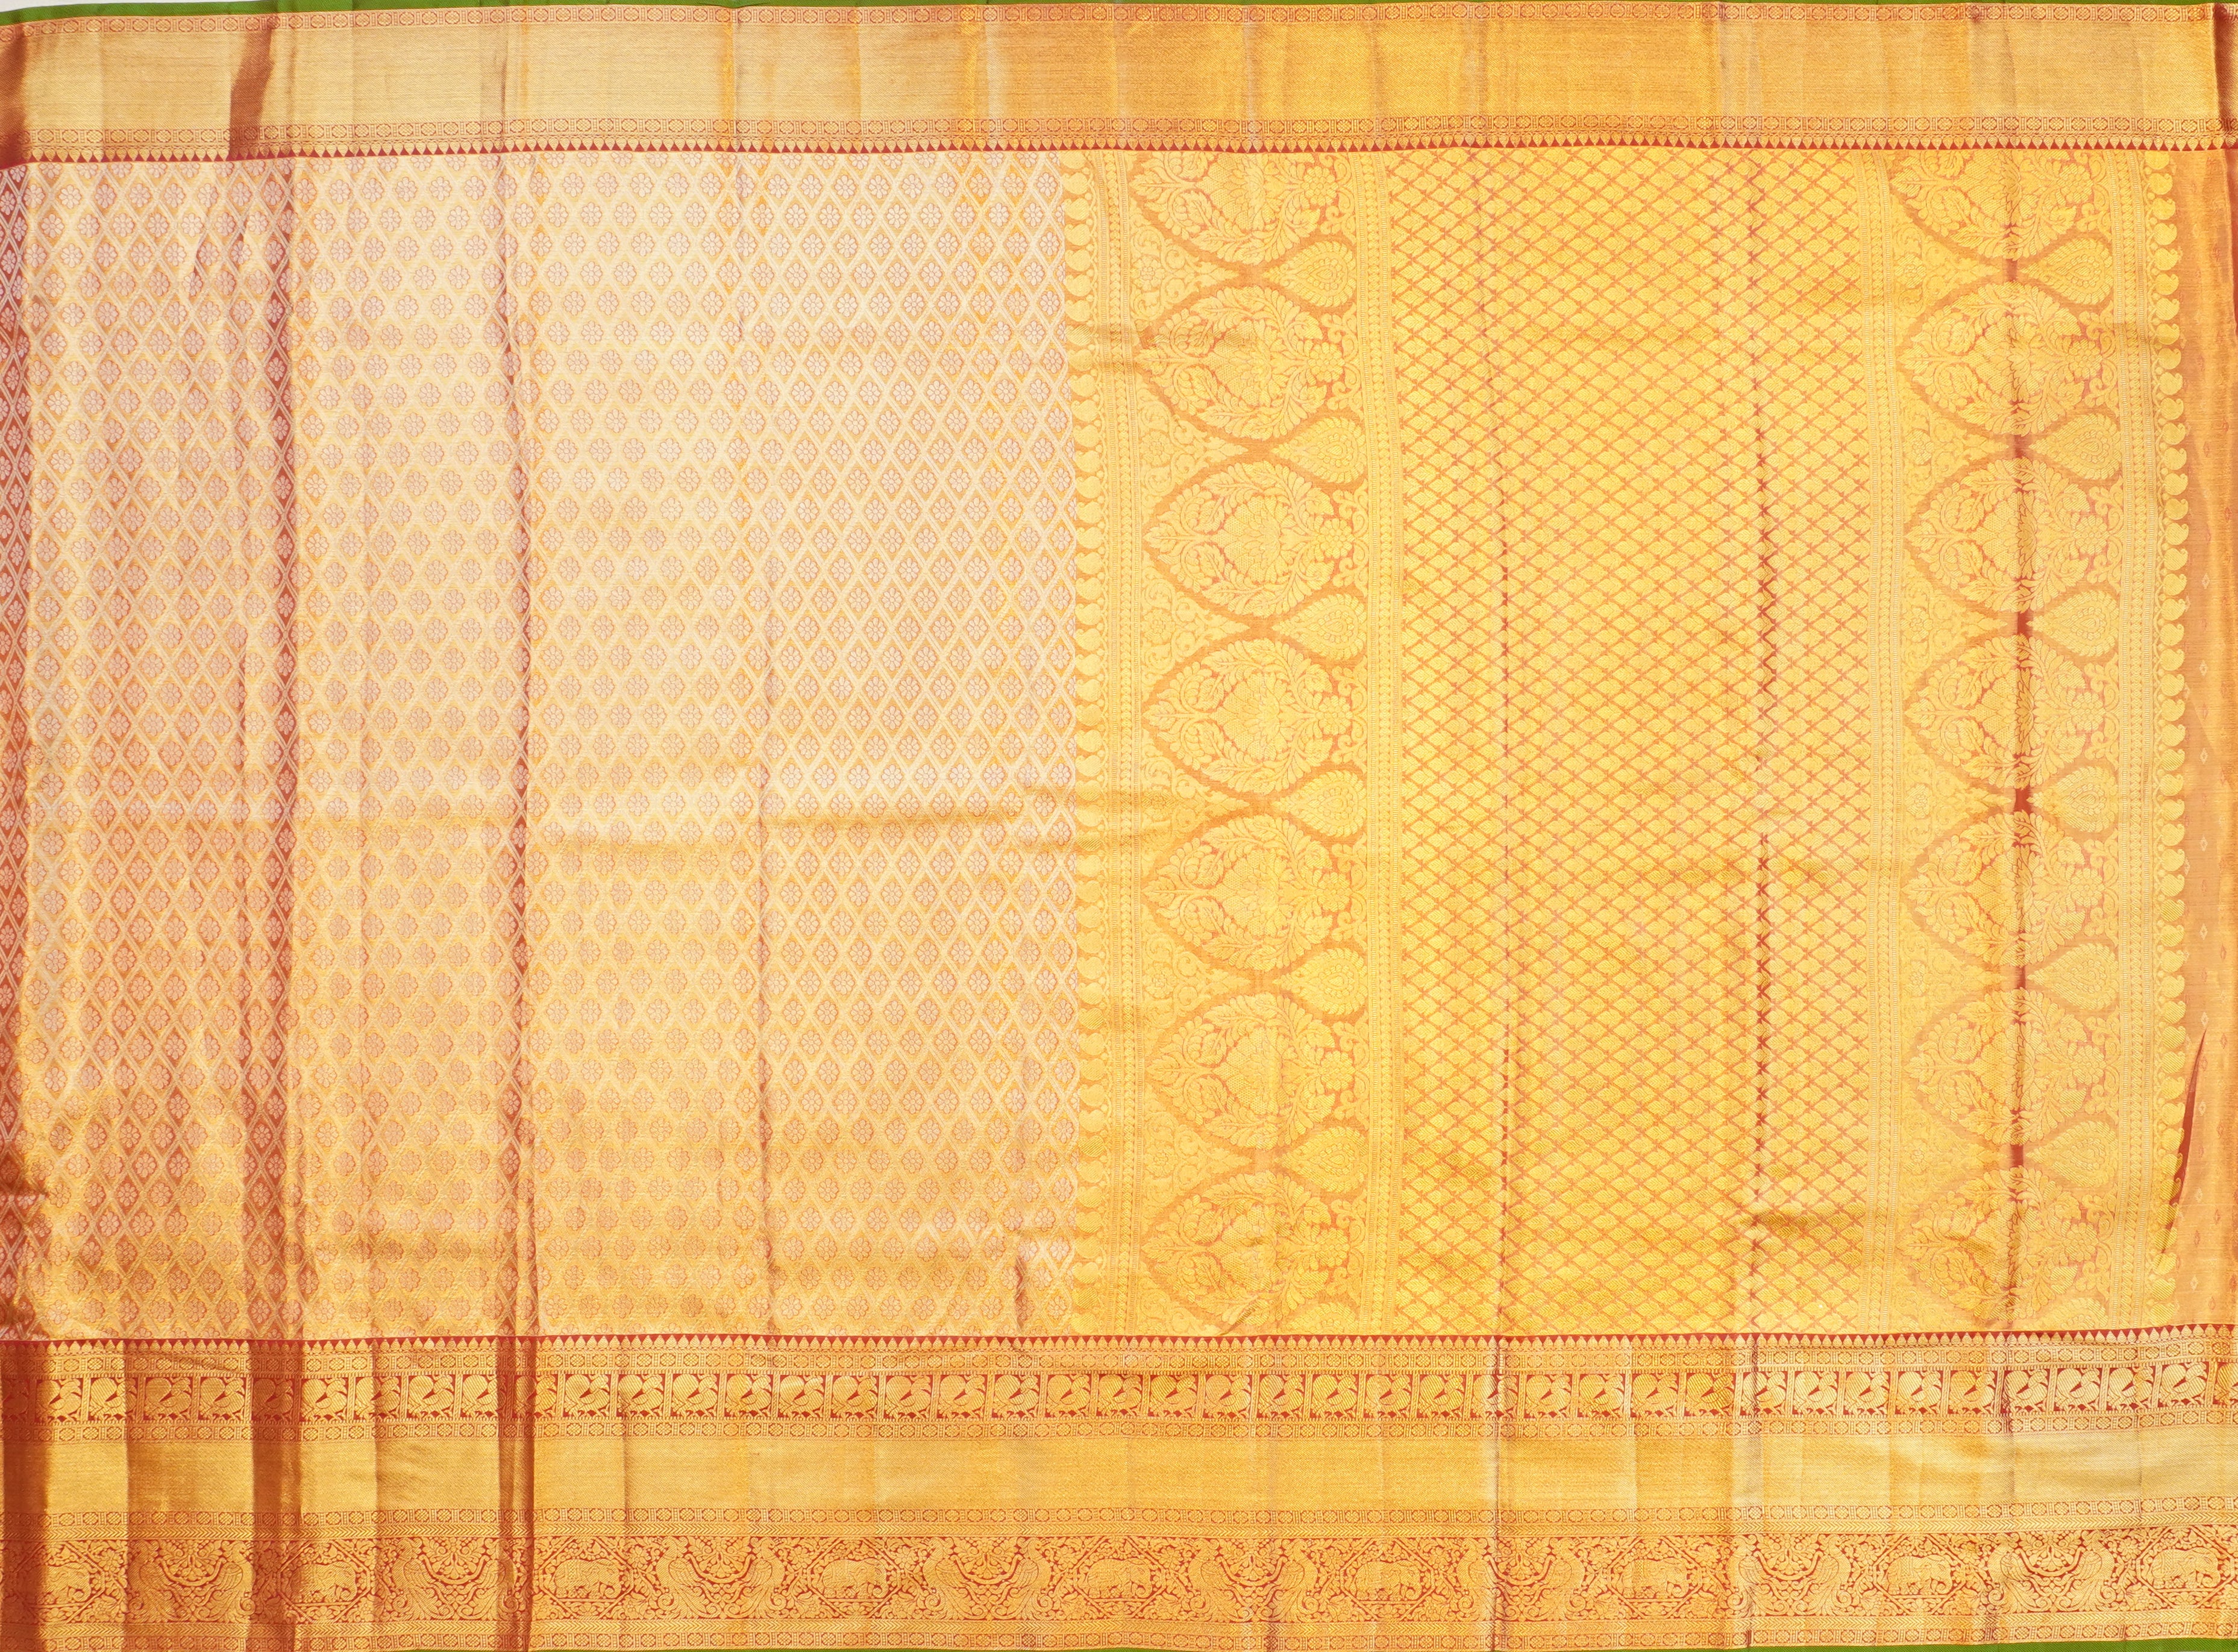 JSB- 8986 | Maroon Pure Kanchi Tissue Pattu Saree